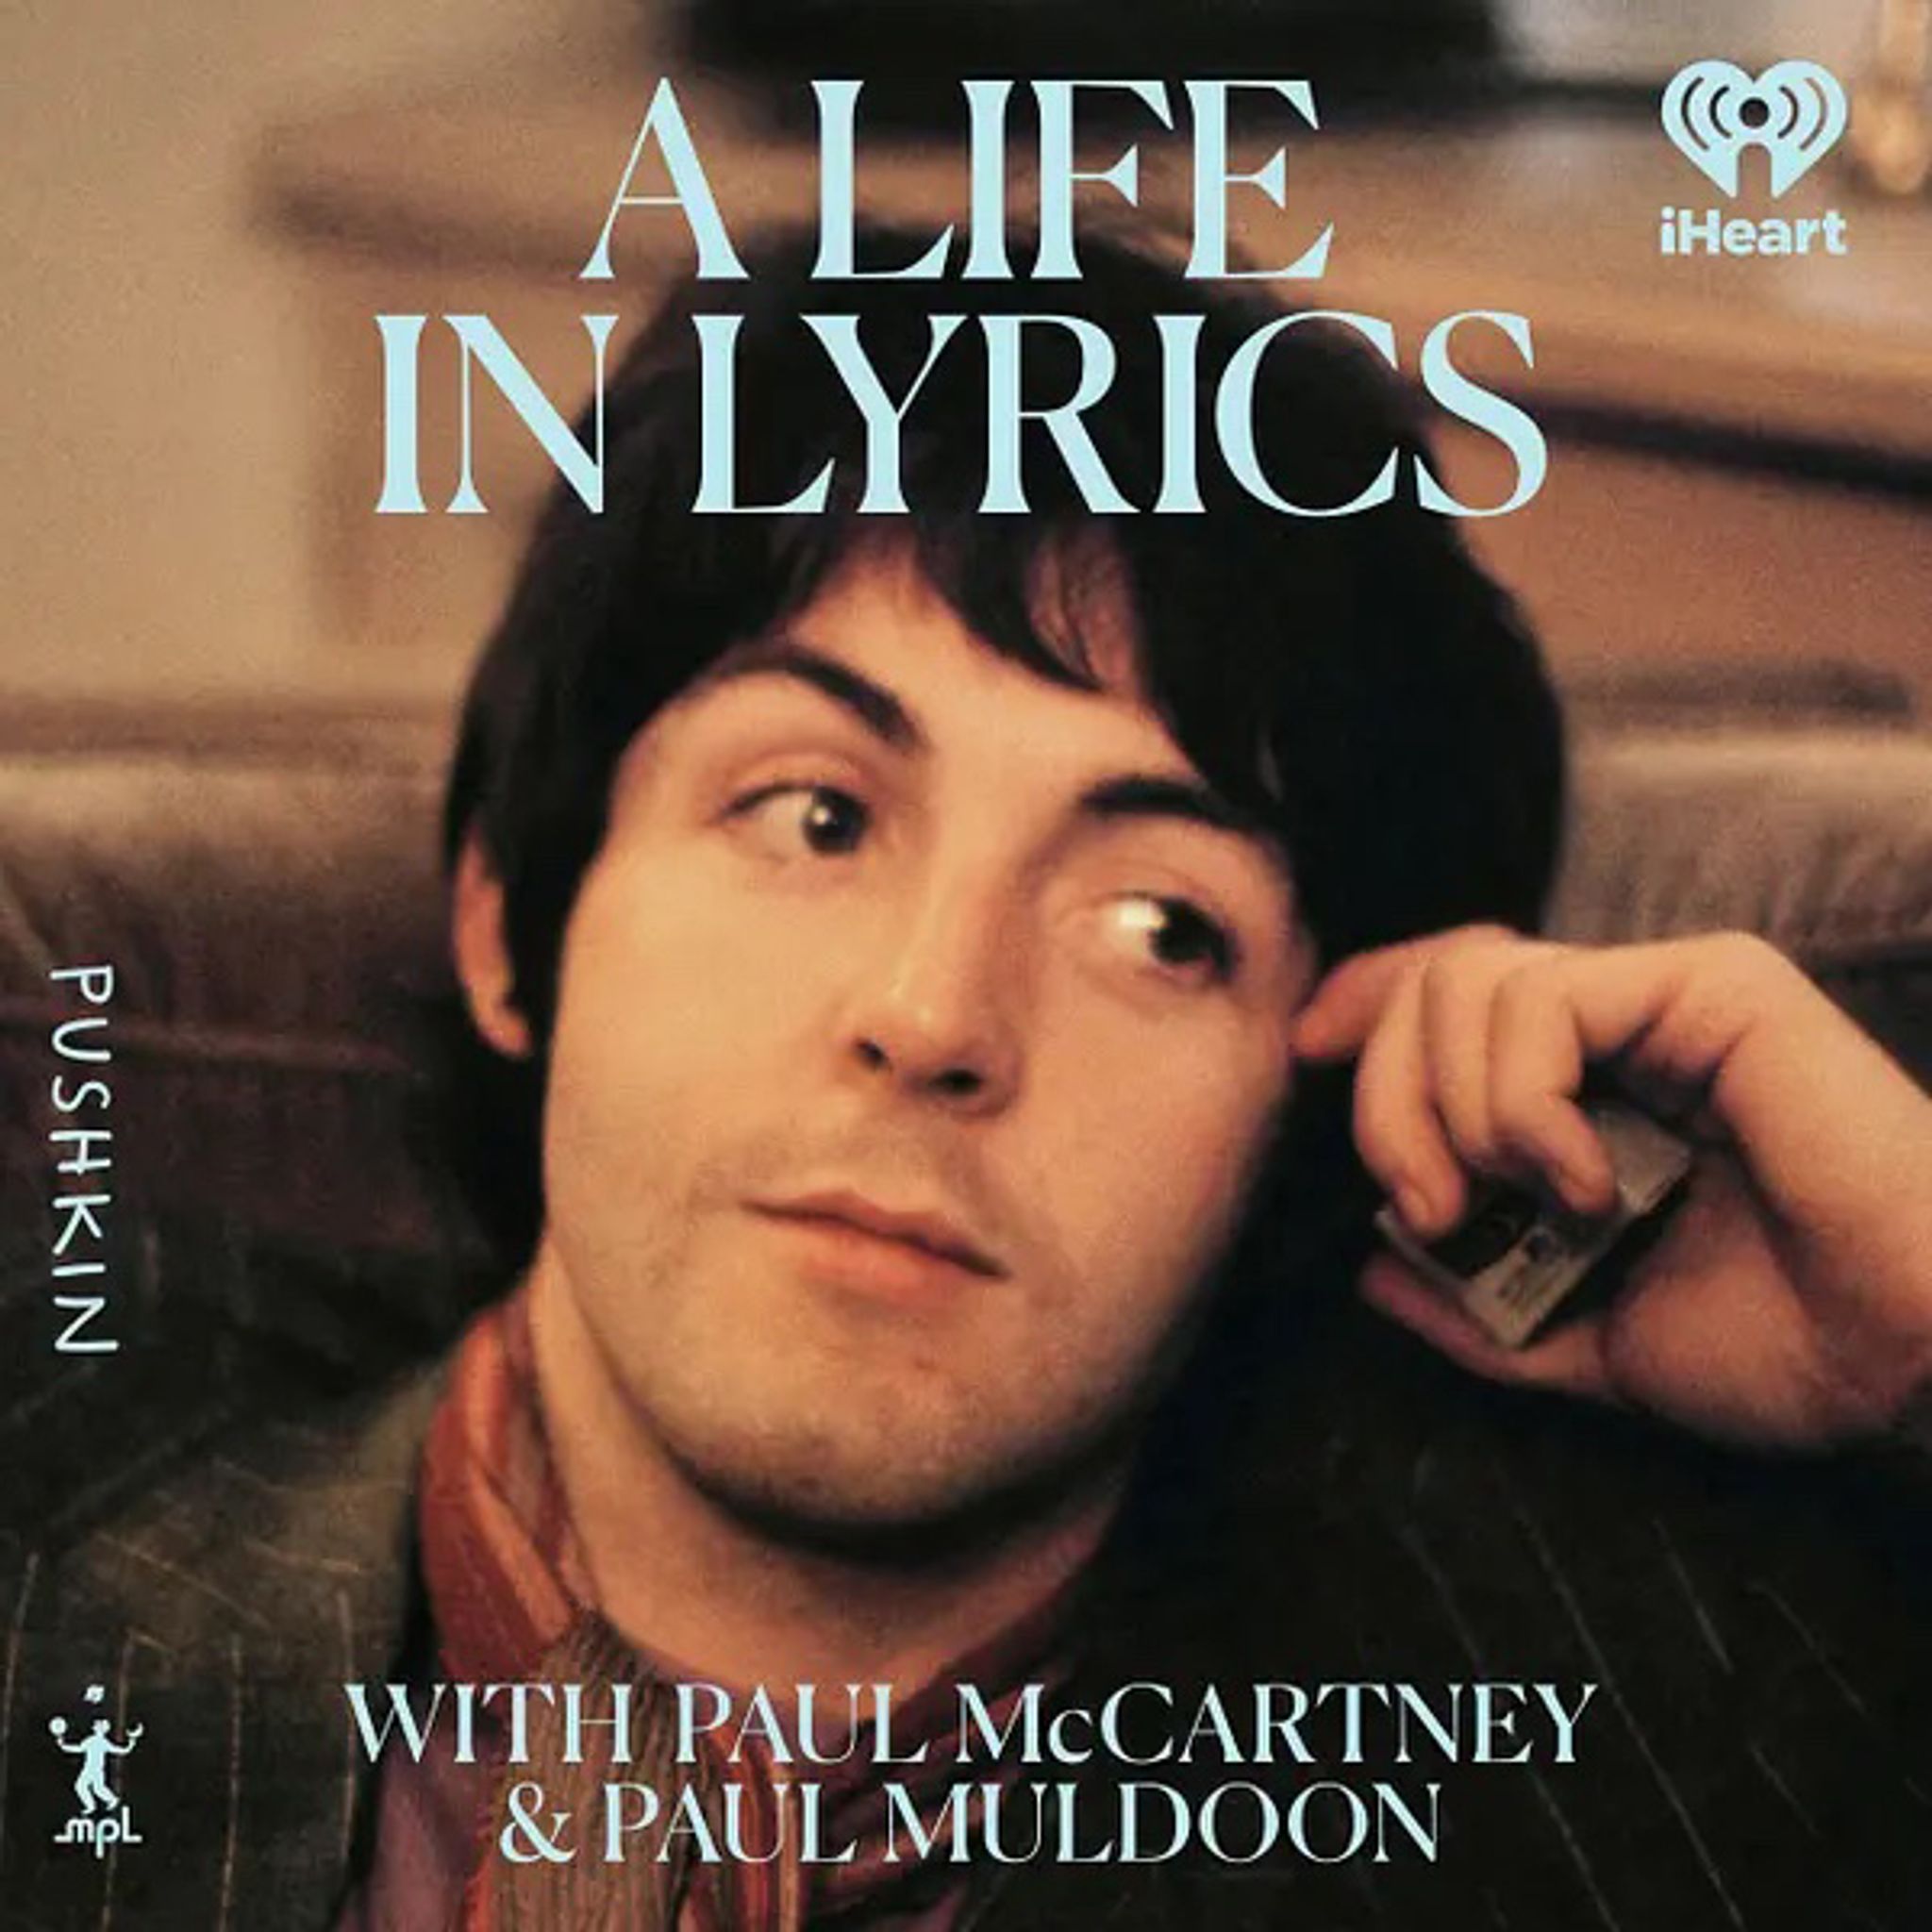 Paul McCartney spricht im Podcast über seine Art Lieder zu schreiben.